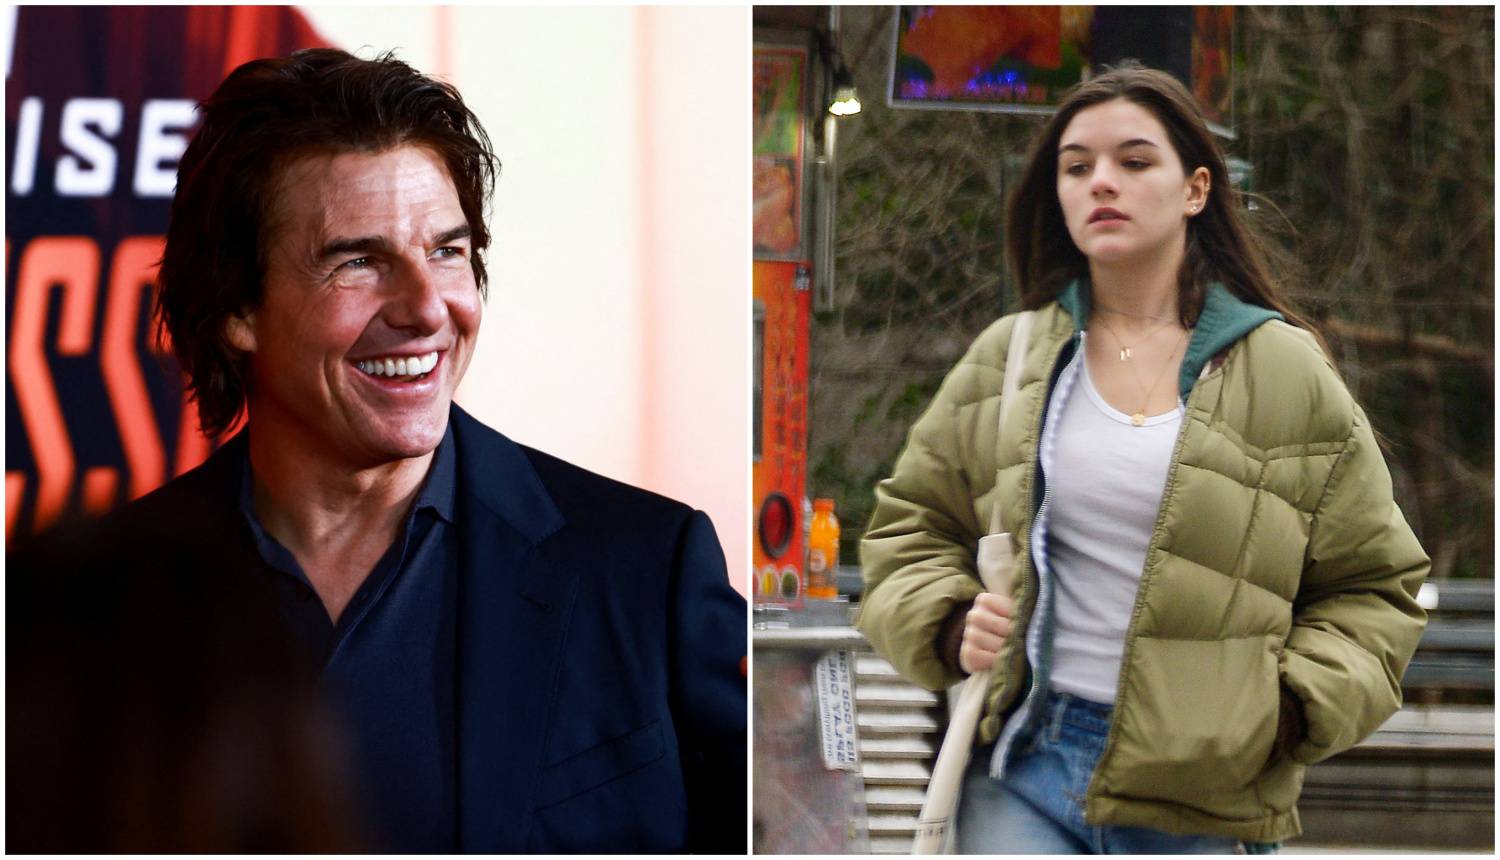 Tom Cruise mogao bi napustiti Scijentološku crkvu zbog kćeri